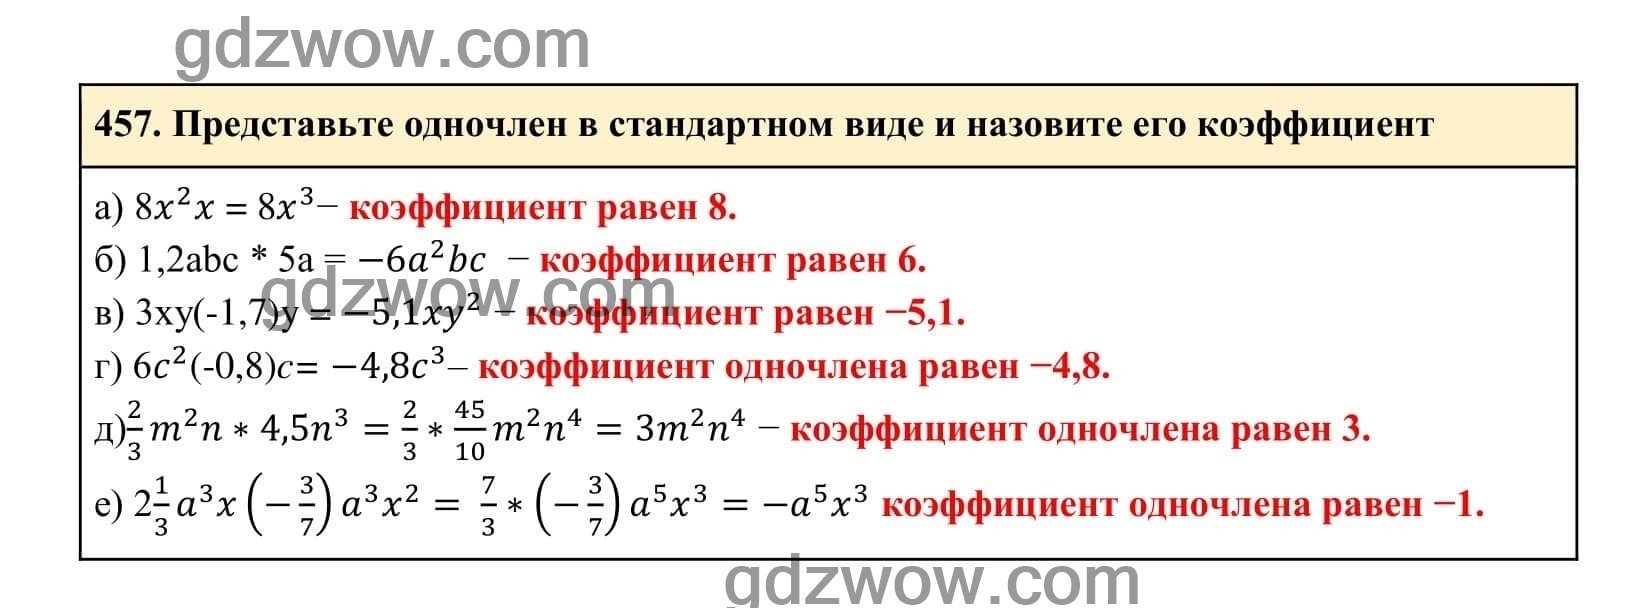 Упражнение 457 - ГДЗ по Алгебре 7 класс Учебник Макарычев (решебник) - GDZwow